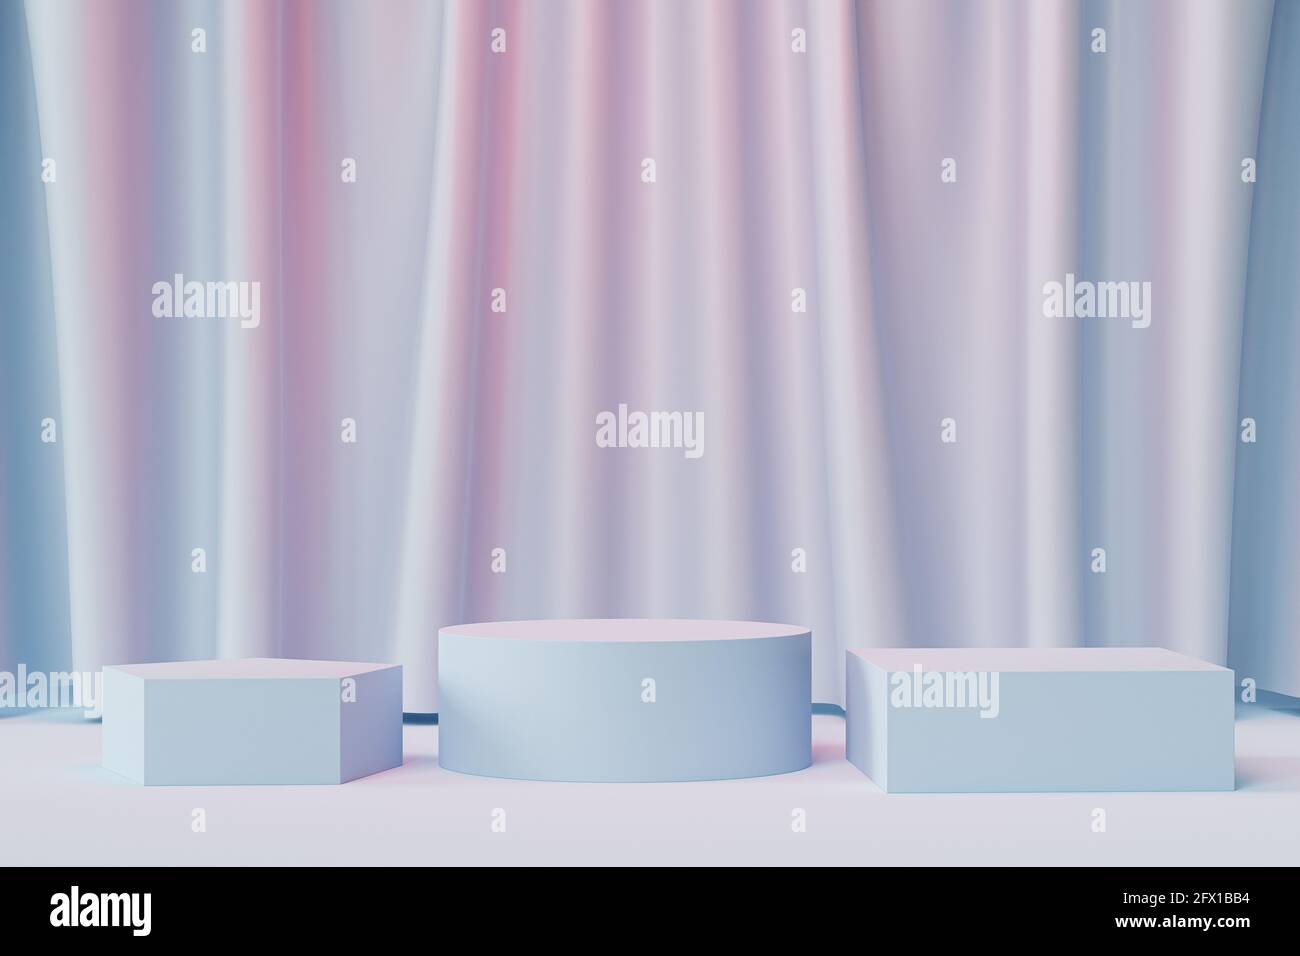 Podiums géométriques ou socles pour produits ou publicité sur fond bleu neutre et rose avec rideaux, rendu minimal de l'illustration 3d Banque D'Images